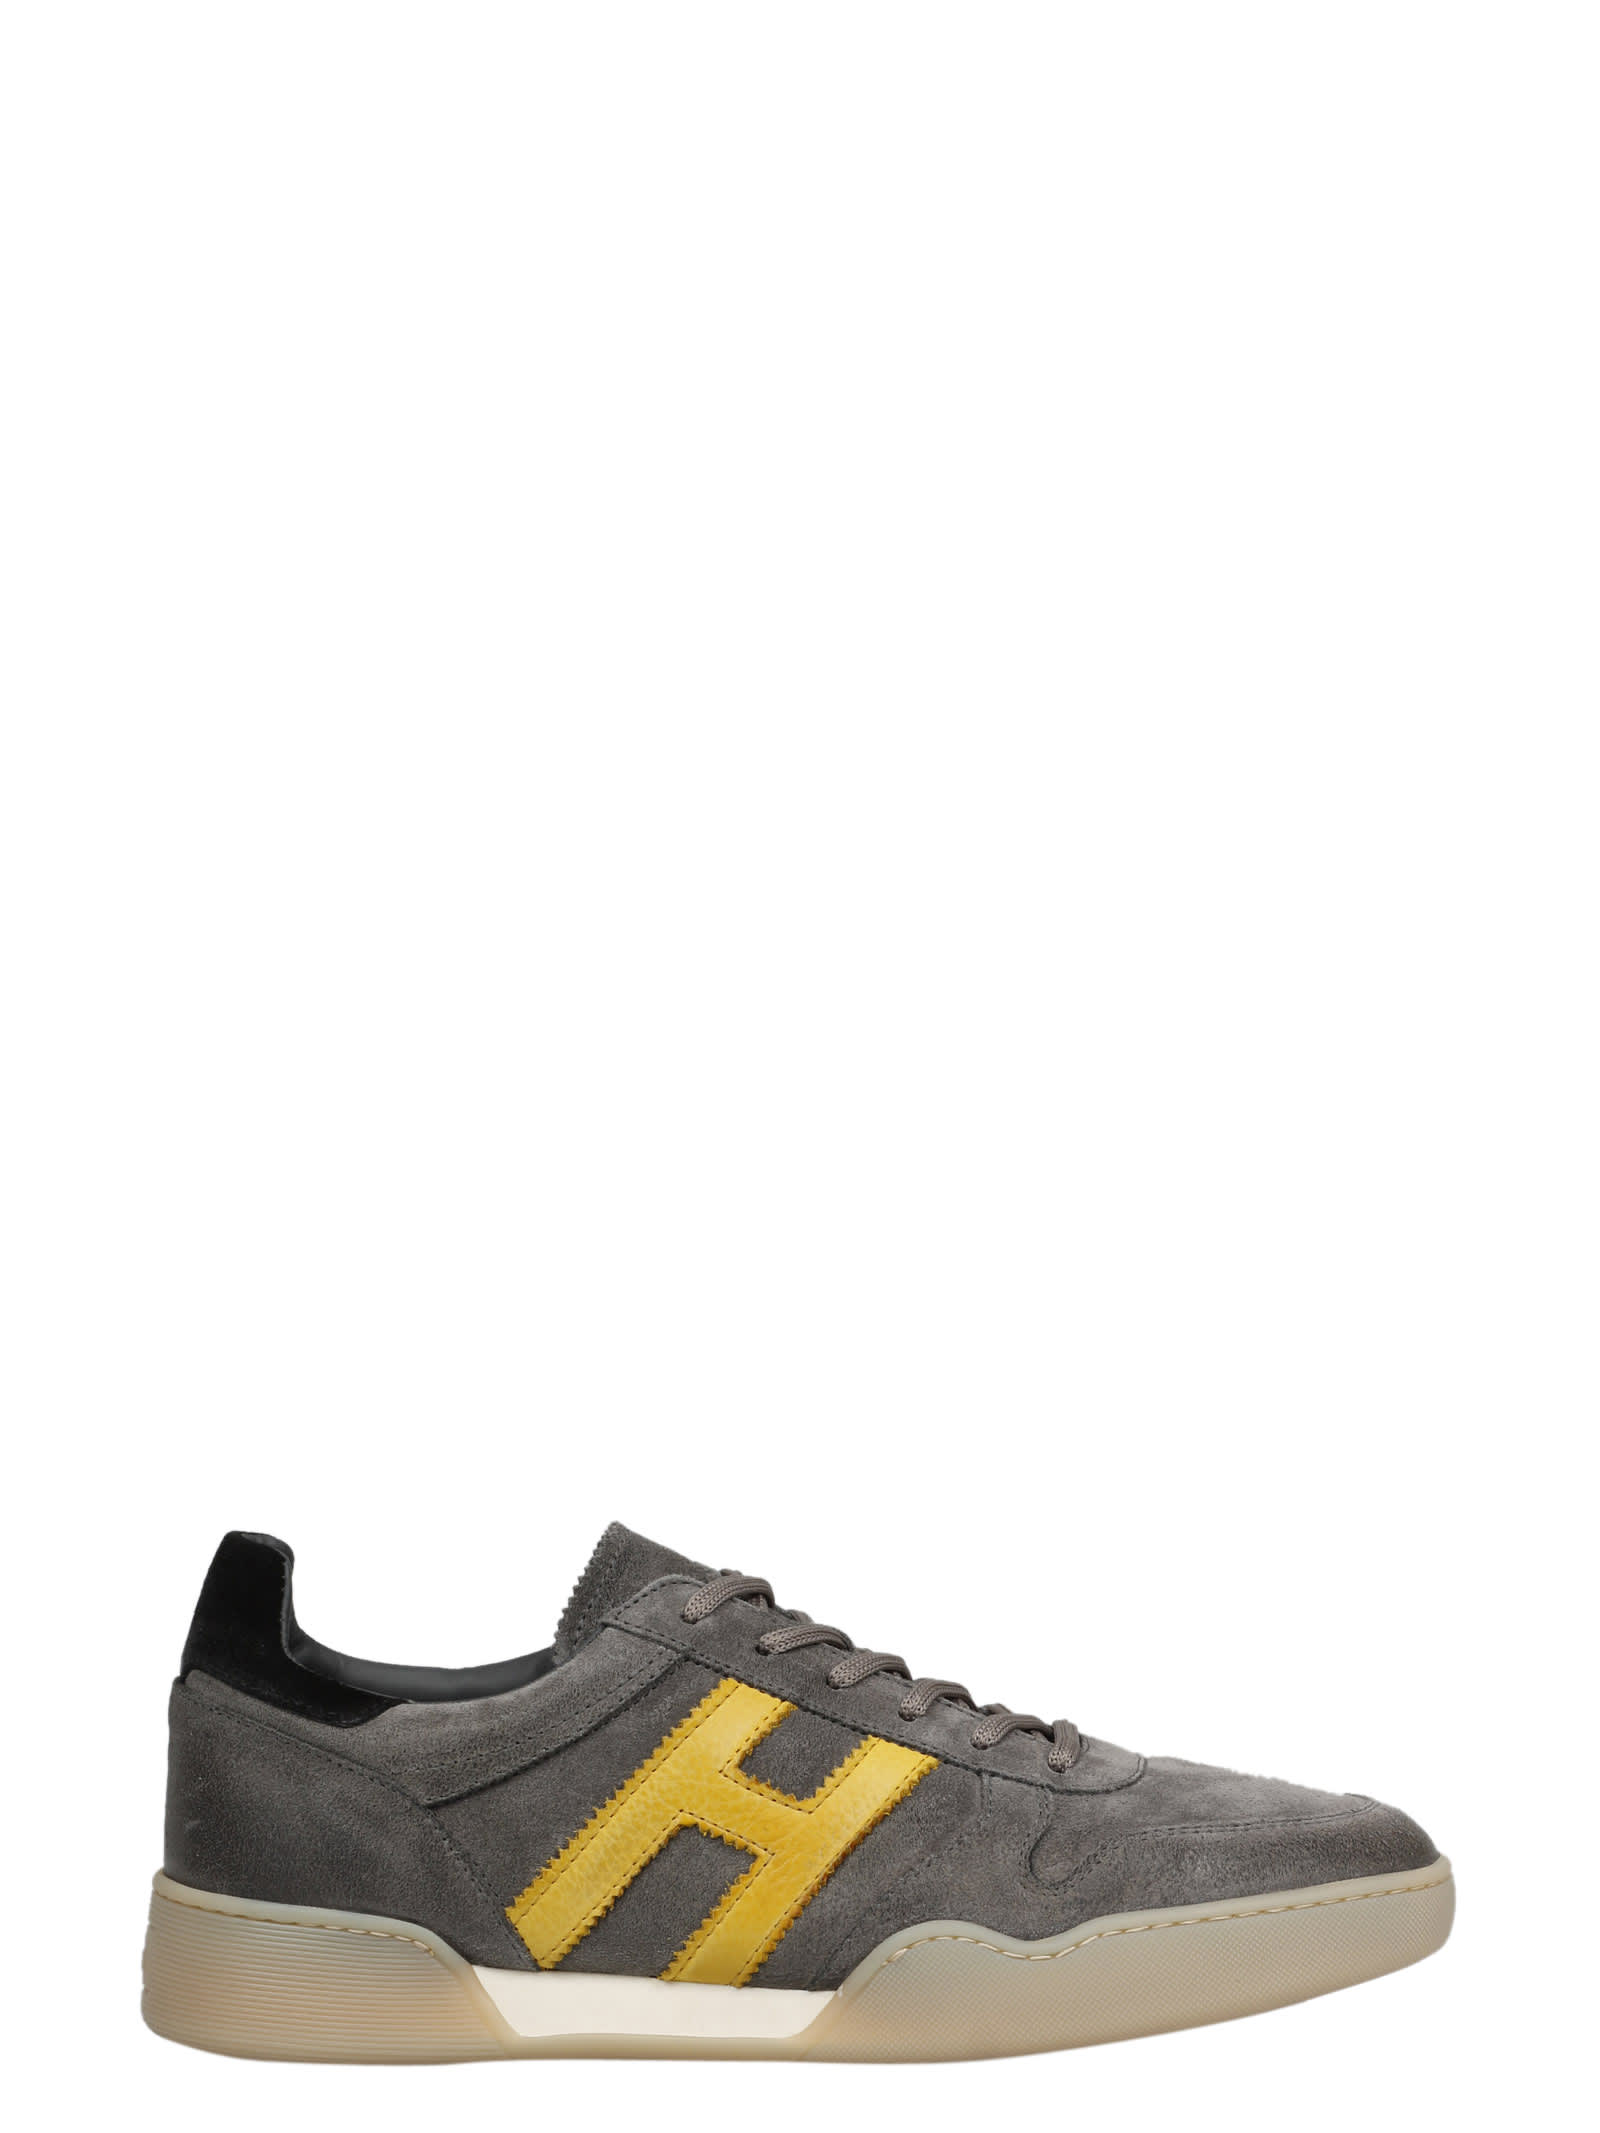 Hogan H537 Sneakers